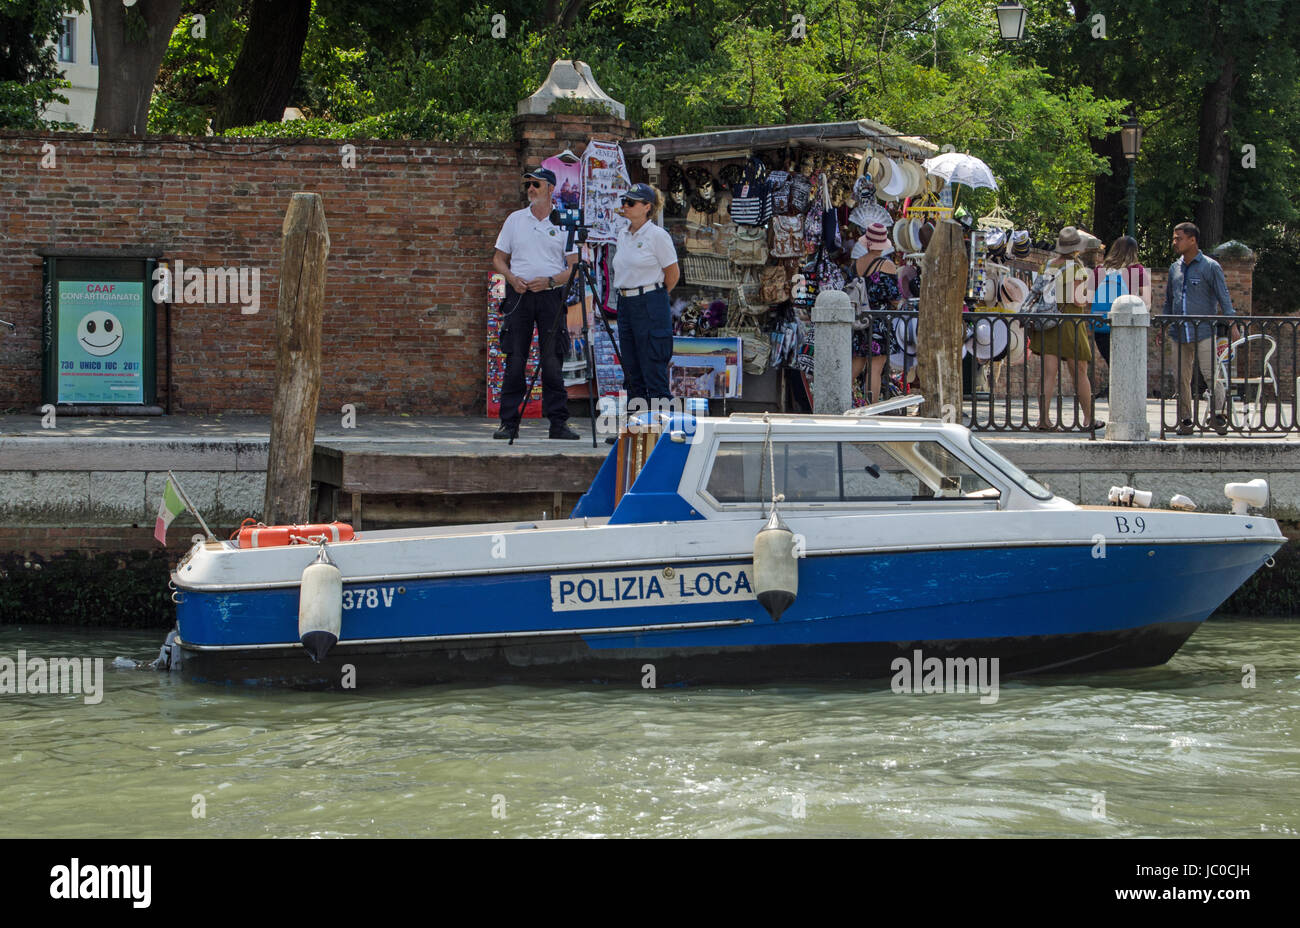 Venezia, Italia - 13 giugno 2017: due funzionari di polizia operante una trappola di velocità accanto a un occupato bancarella vendendo souvenir turistici sul Canal Grande di Venezia. Foto Stock